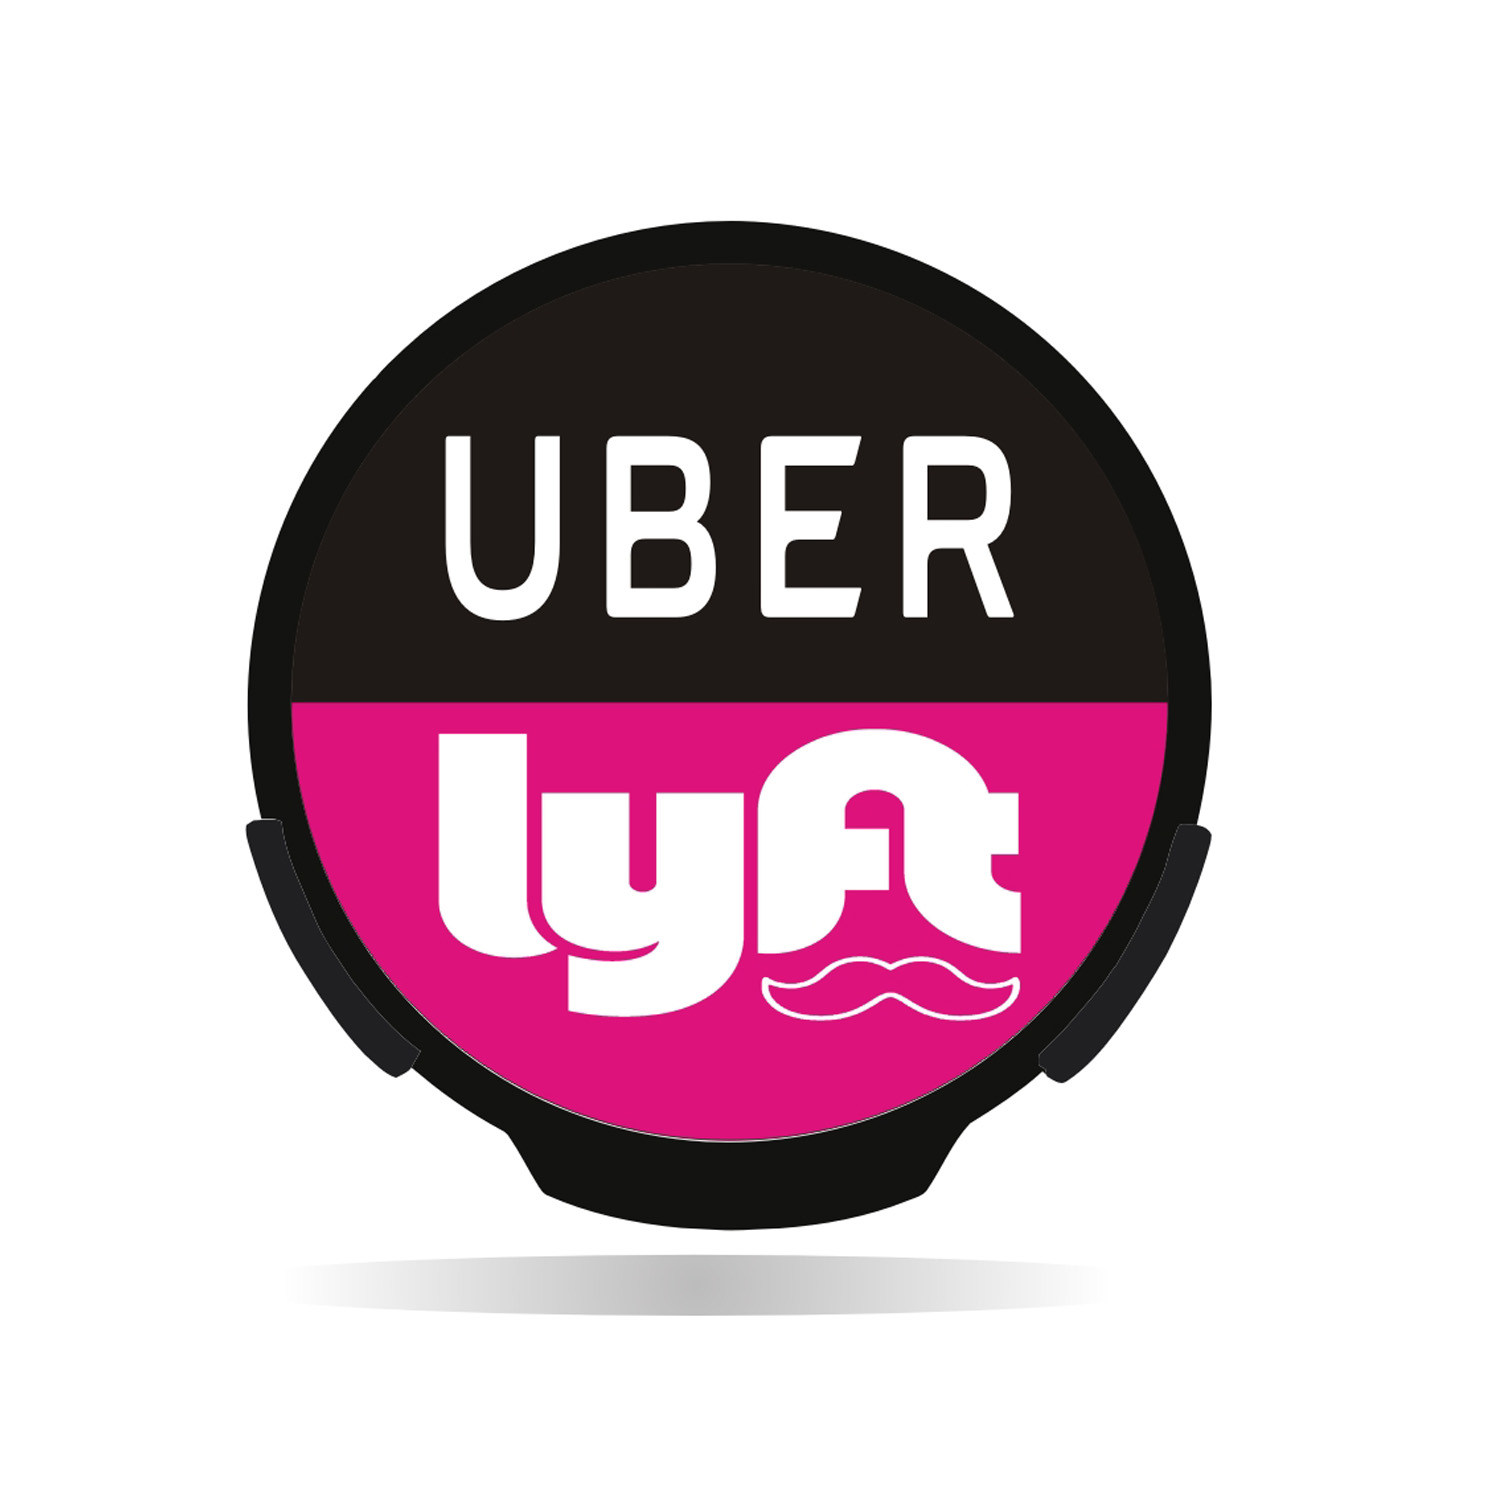 Uber Lyft LED Sign signe la fenêtre de la voiture de voiture de la voiture d'alimentation des badges d'activation / désactivation pour chauffeur de taxi